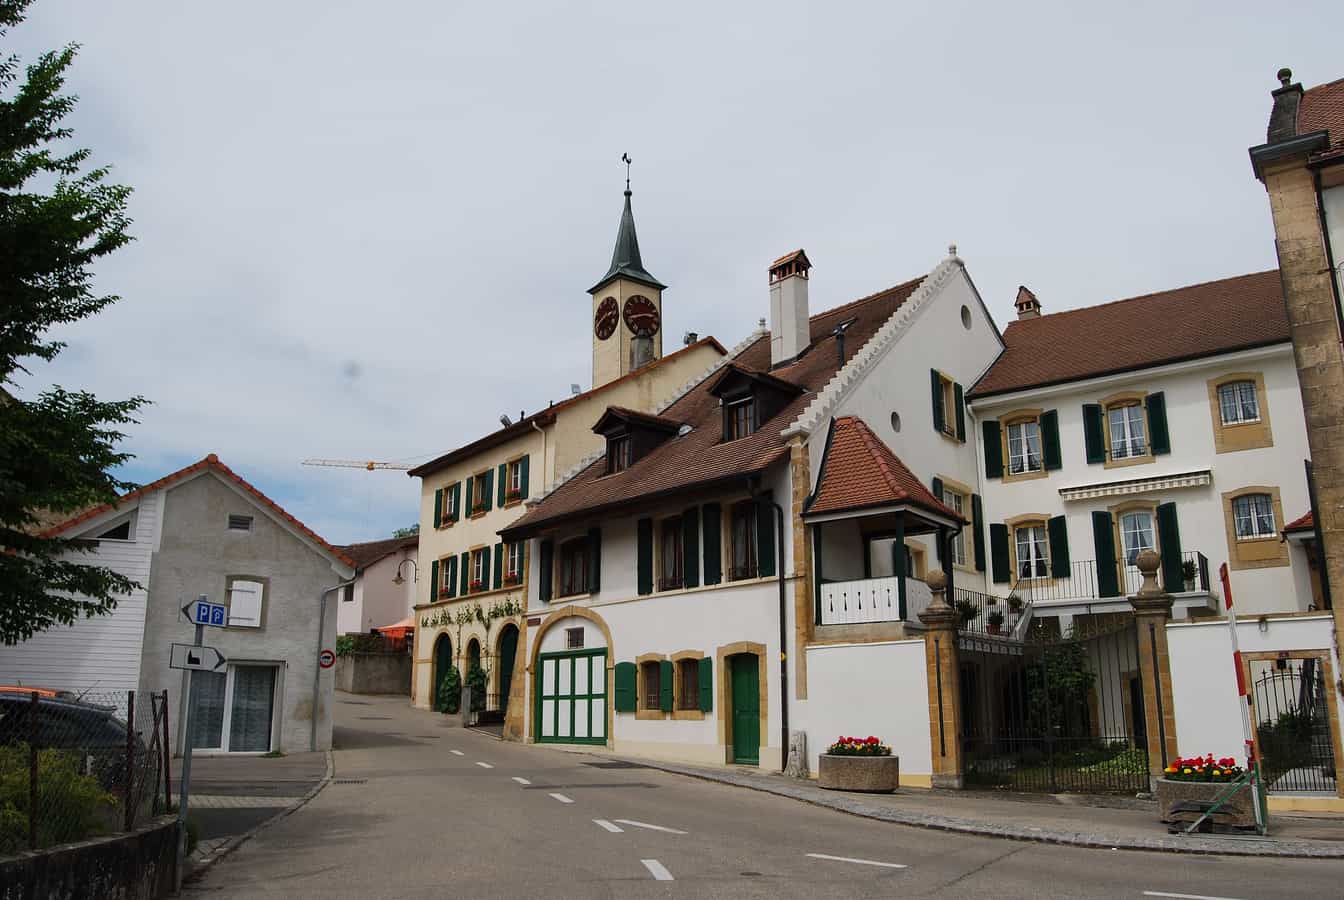 Montagny-près-Yverdon, canton de Vaud, Suisse